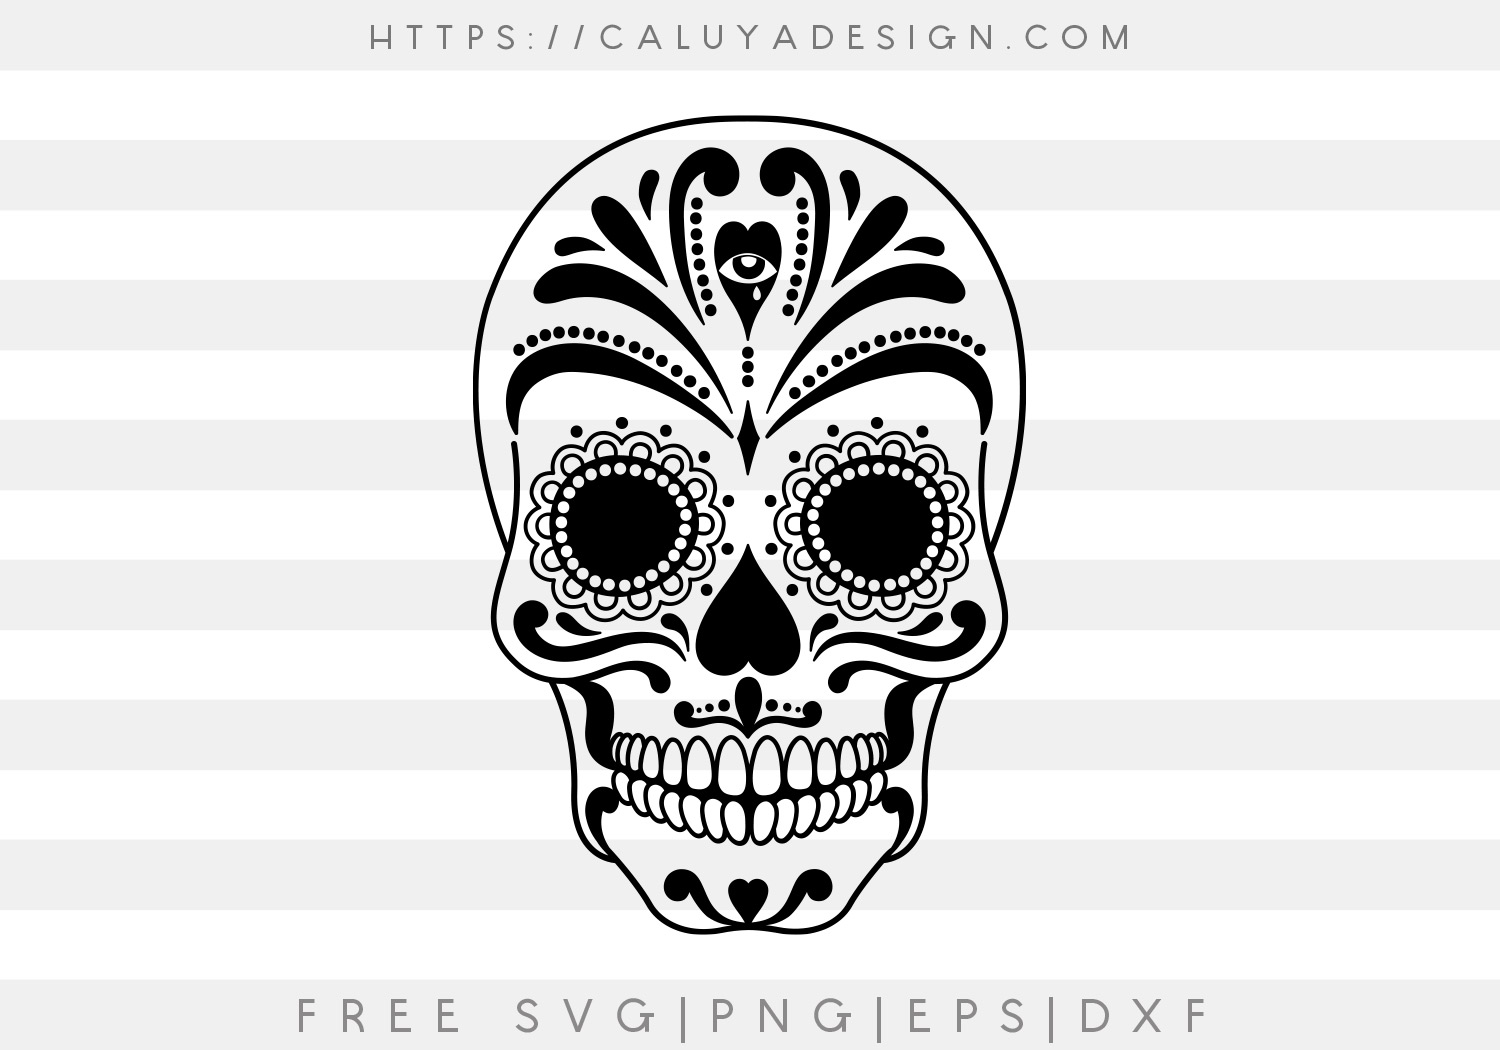 Free Vintage Sugar Skull SVG, PNG, EPS & DXF